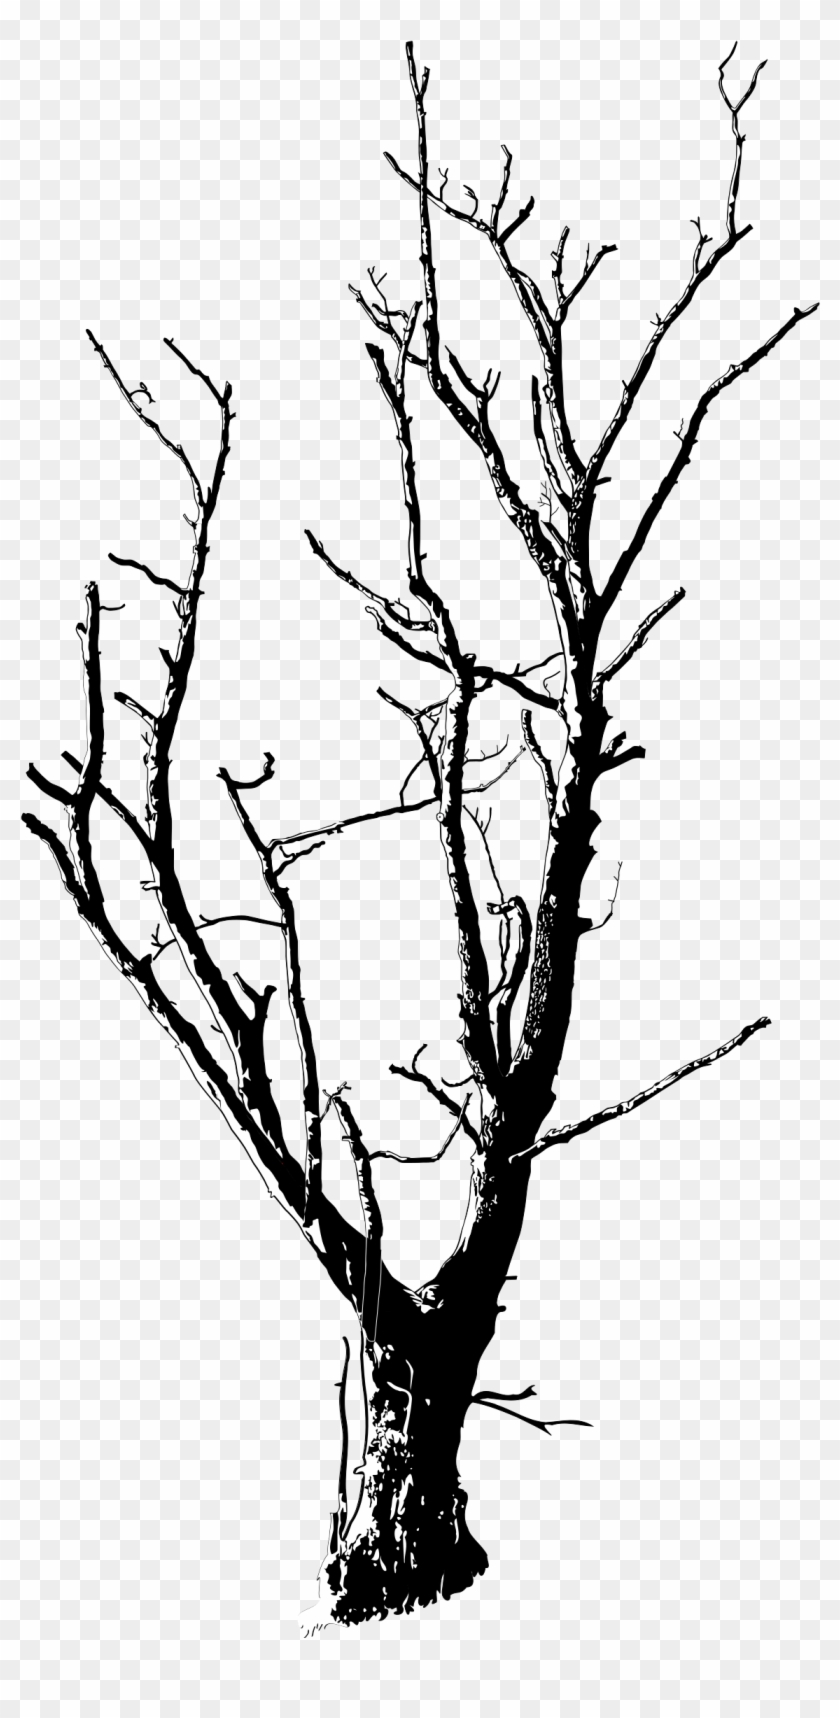 Drawn Dead Tree Dead Flower - Dead Tree Black And White #26958